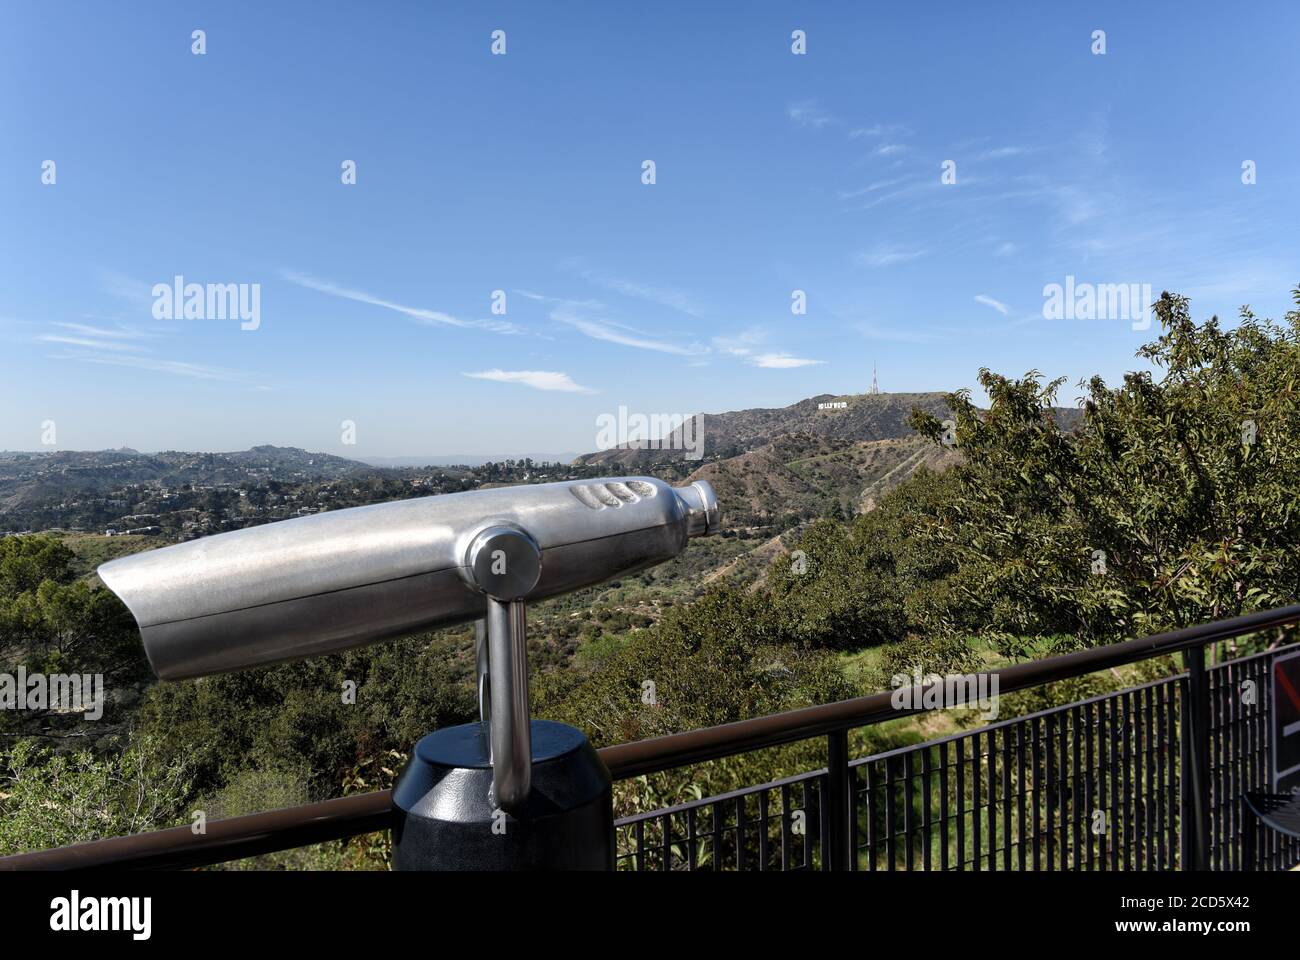 LOS ANGELES, KALIFORNIEN - 12. FEB 2020: Besucherteleskop auf der Westseite des Griffith Park Observatory mit dem Hollywood-Schild in der Ferne. Stockfoto